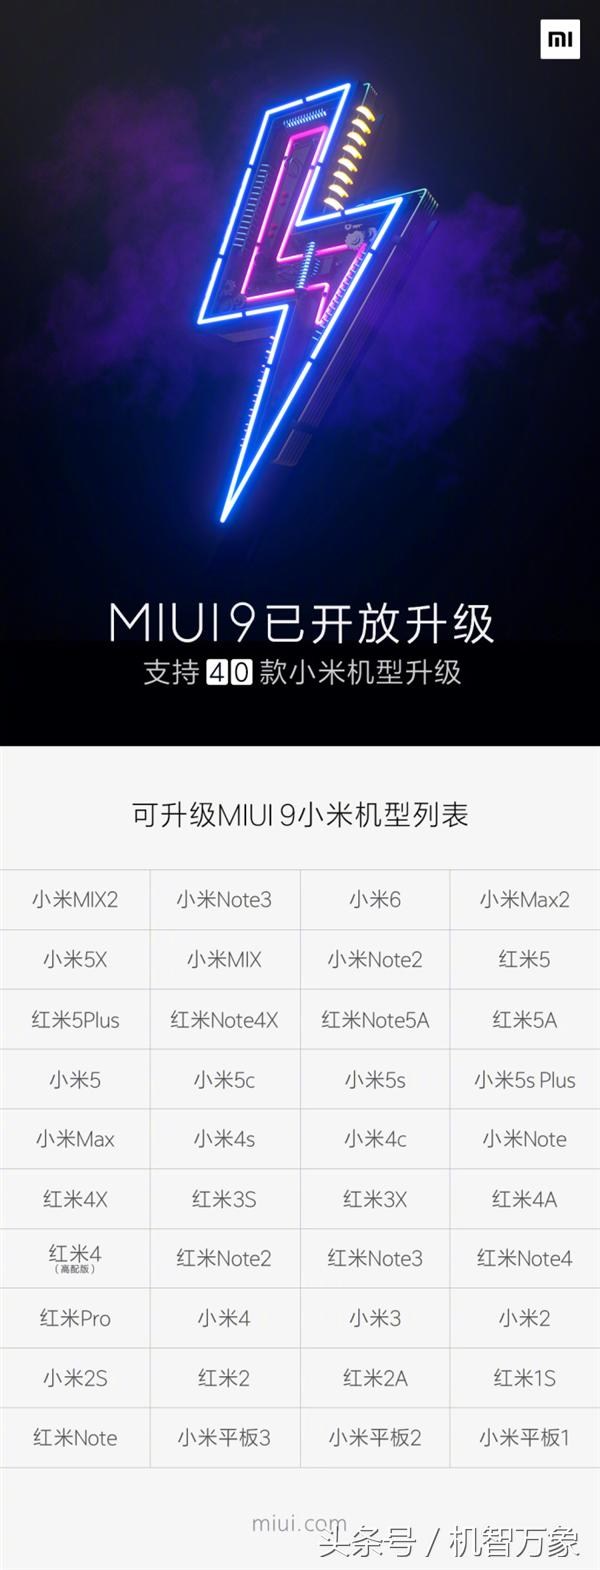 小米2/3s进到最终一批MIUI 9消息推送机器设备名册 全新开发版添加门卡